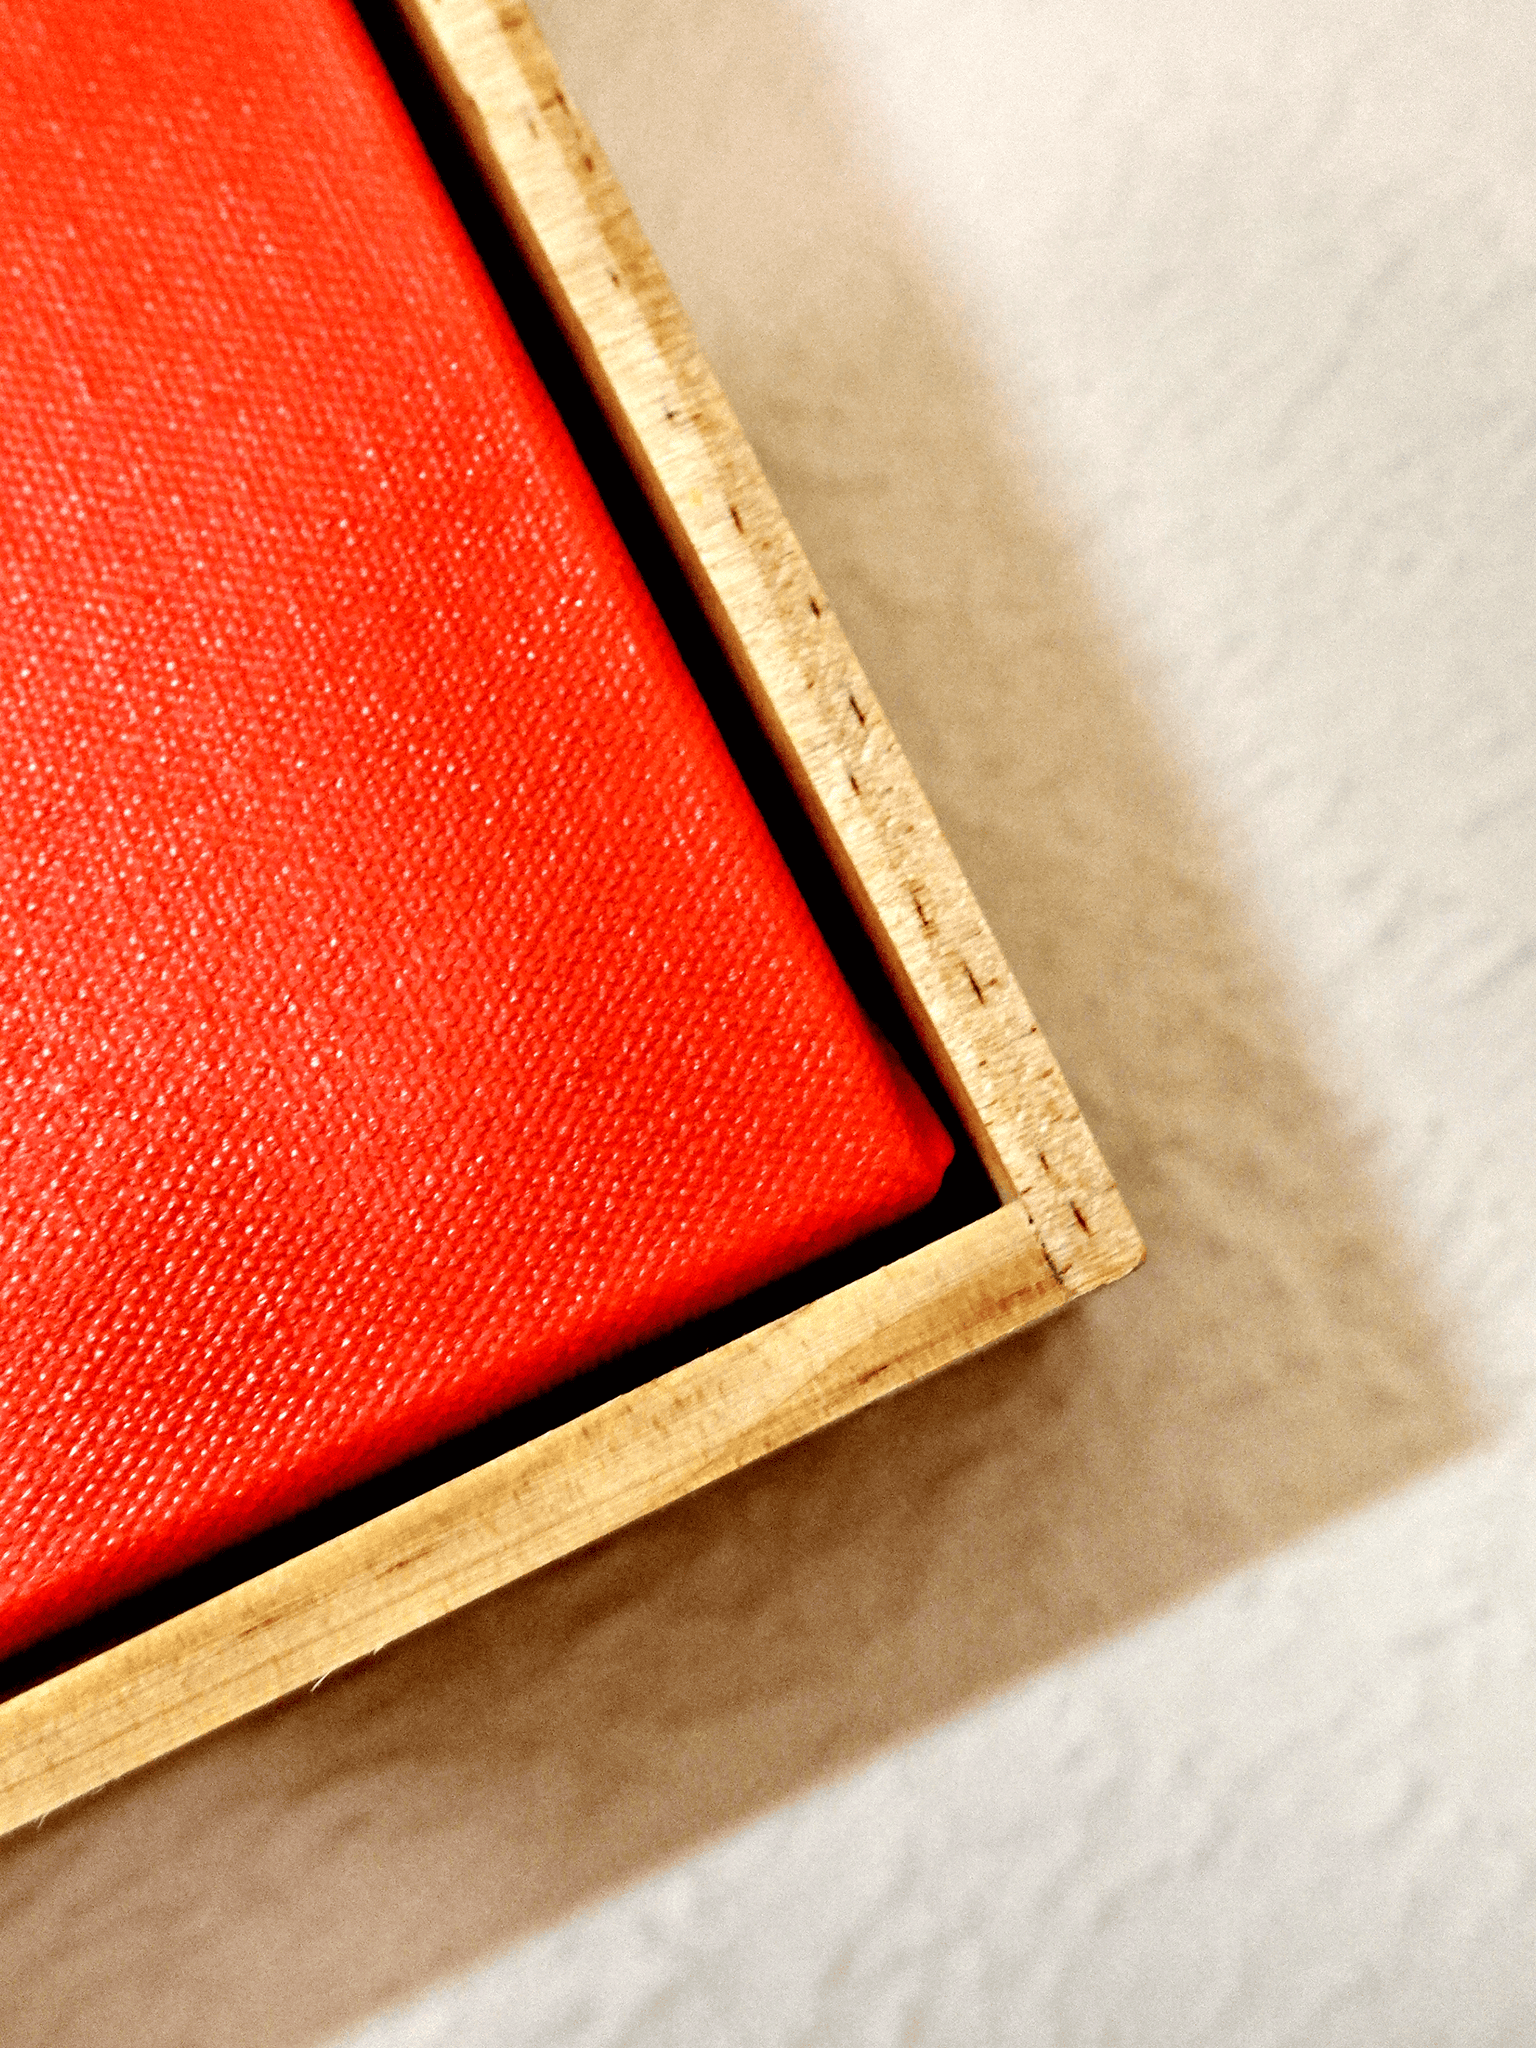 Red Prawn Platter 1/1